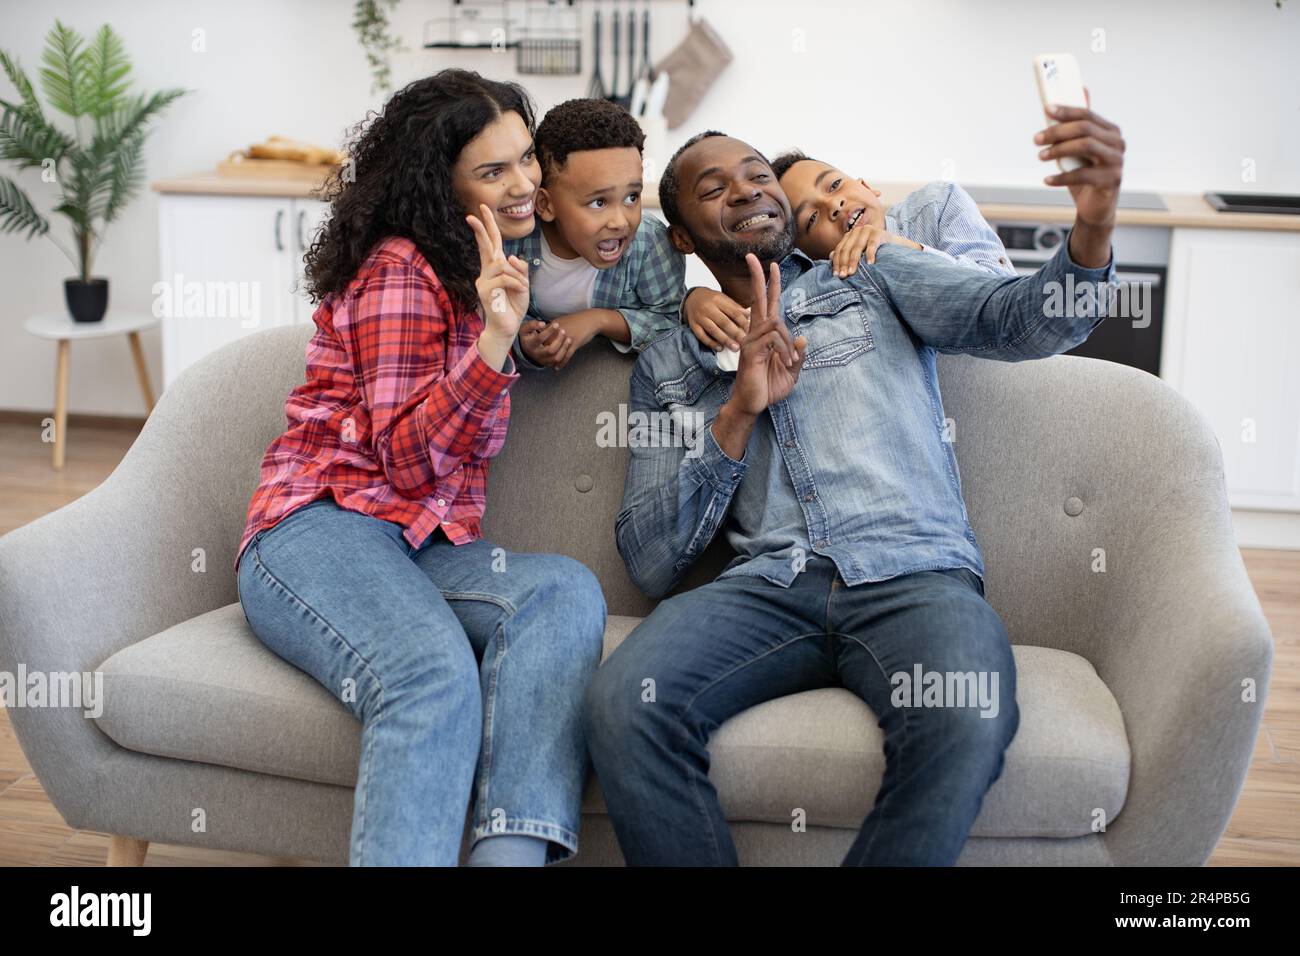 Ein multikultureller Vater mit Telefon und Mutter mit V-Schild, während energiegeladene Kinder hinter dem Sofa in der Lounge des Zuhauses stehen. Glückliches Paar mit Söhnen, das sich selbst über die mobile App fotografieren lässt. Stockfoto